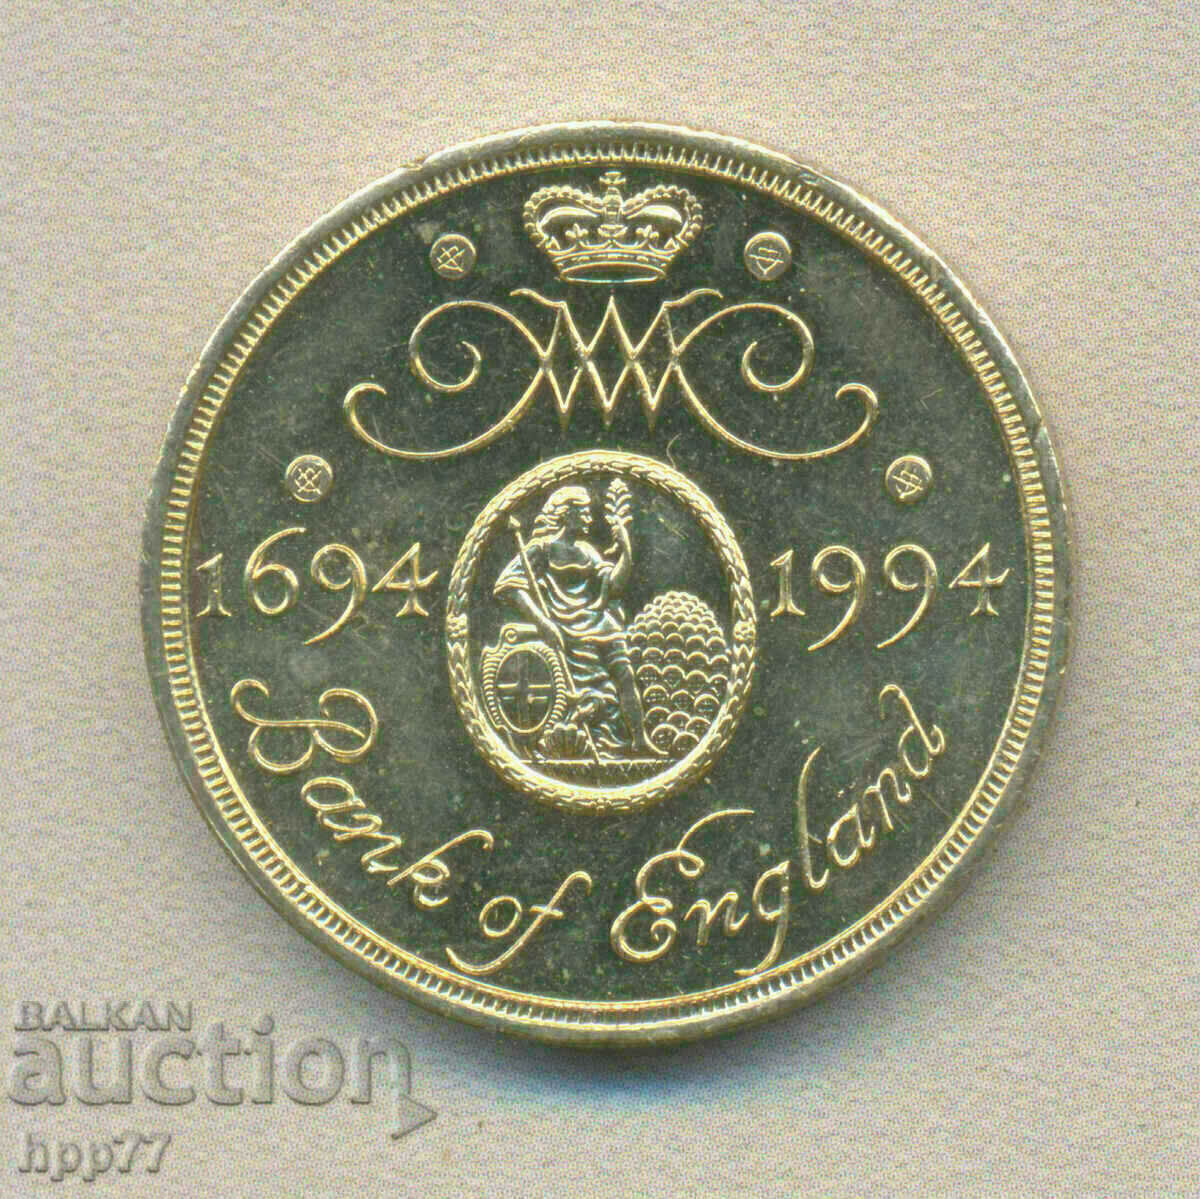 2 паунда 1994 300 години Английска банка